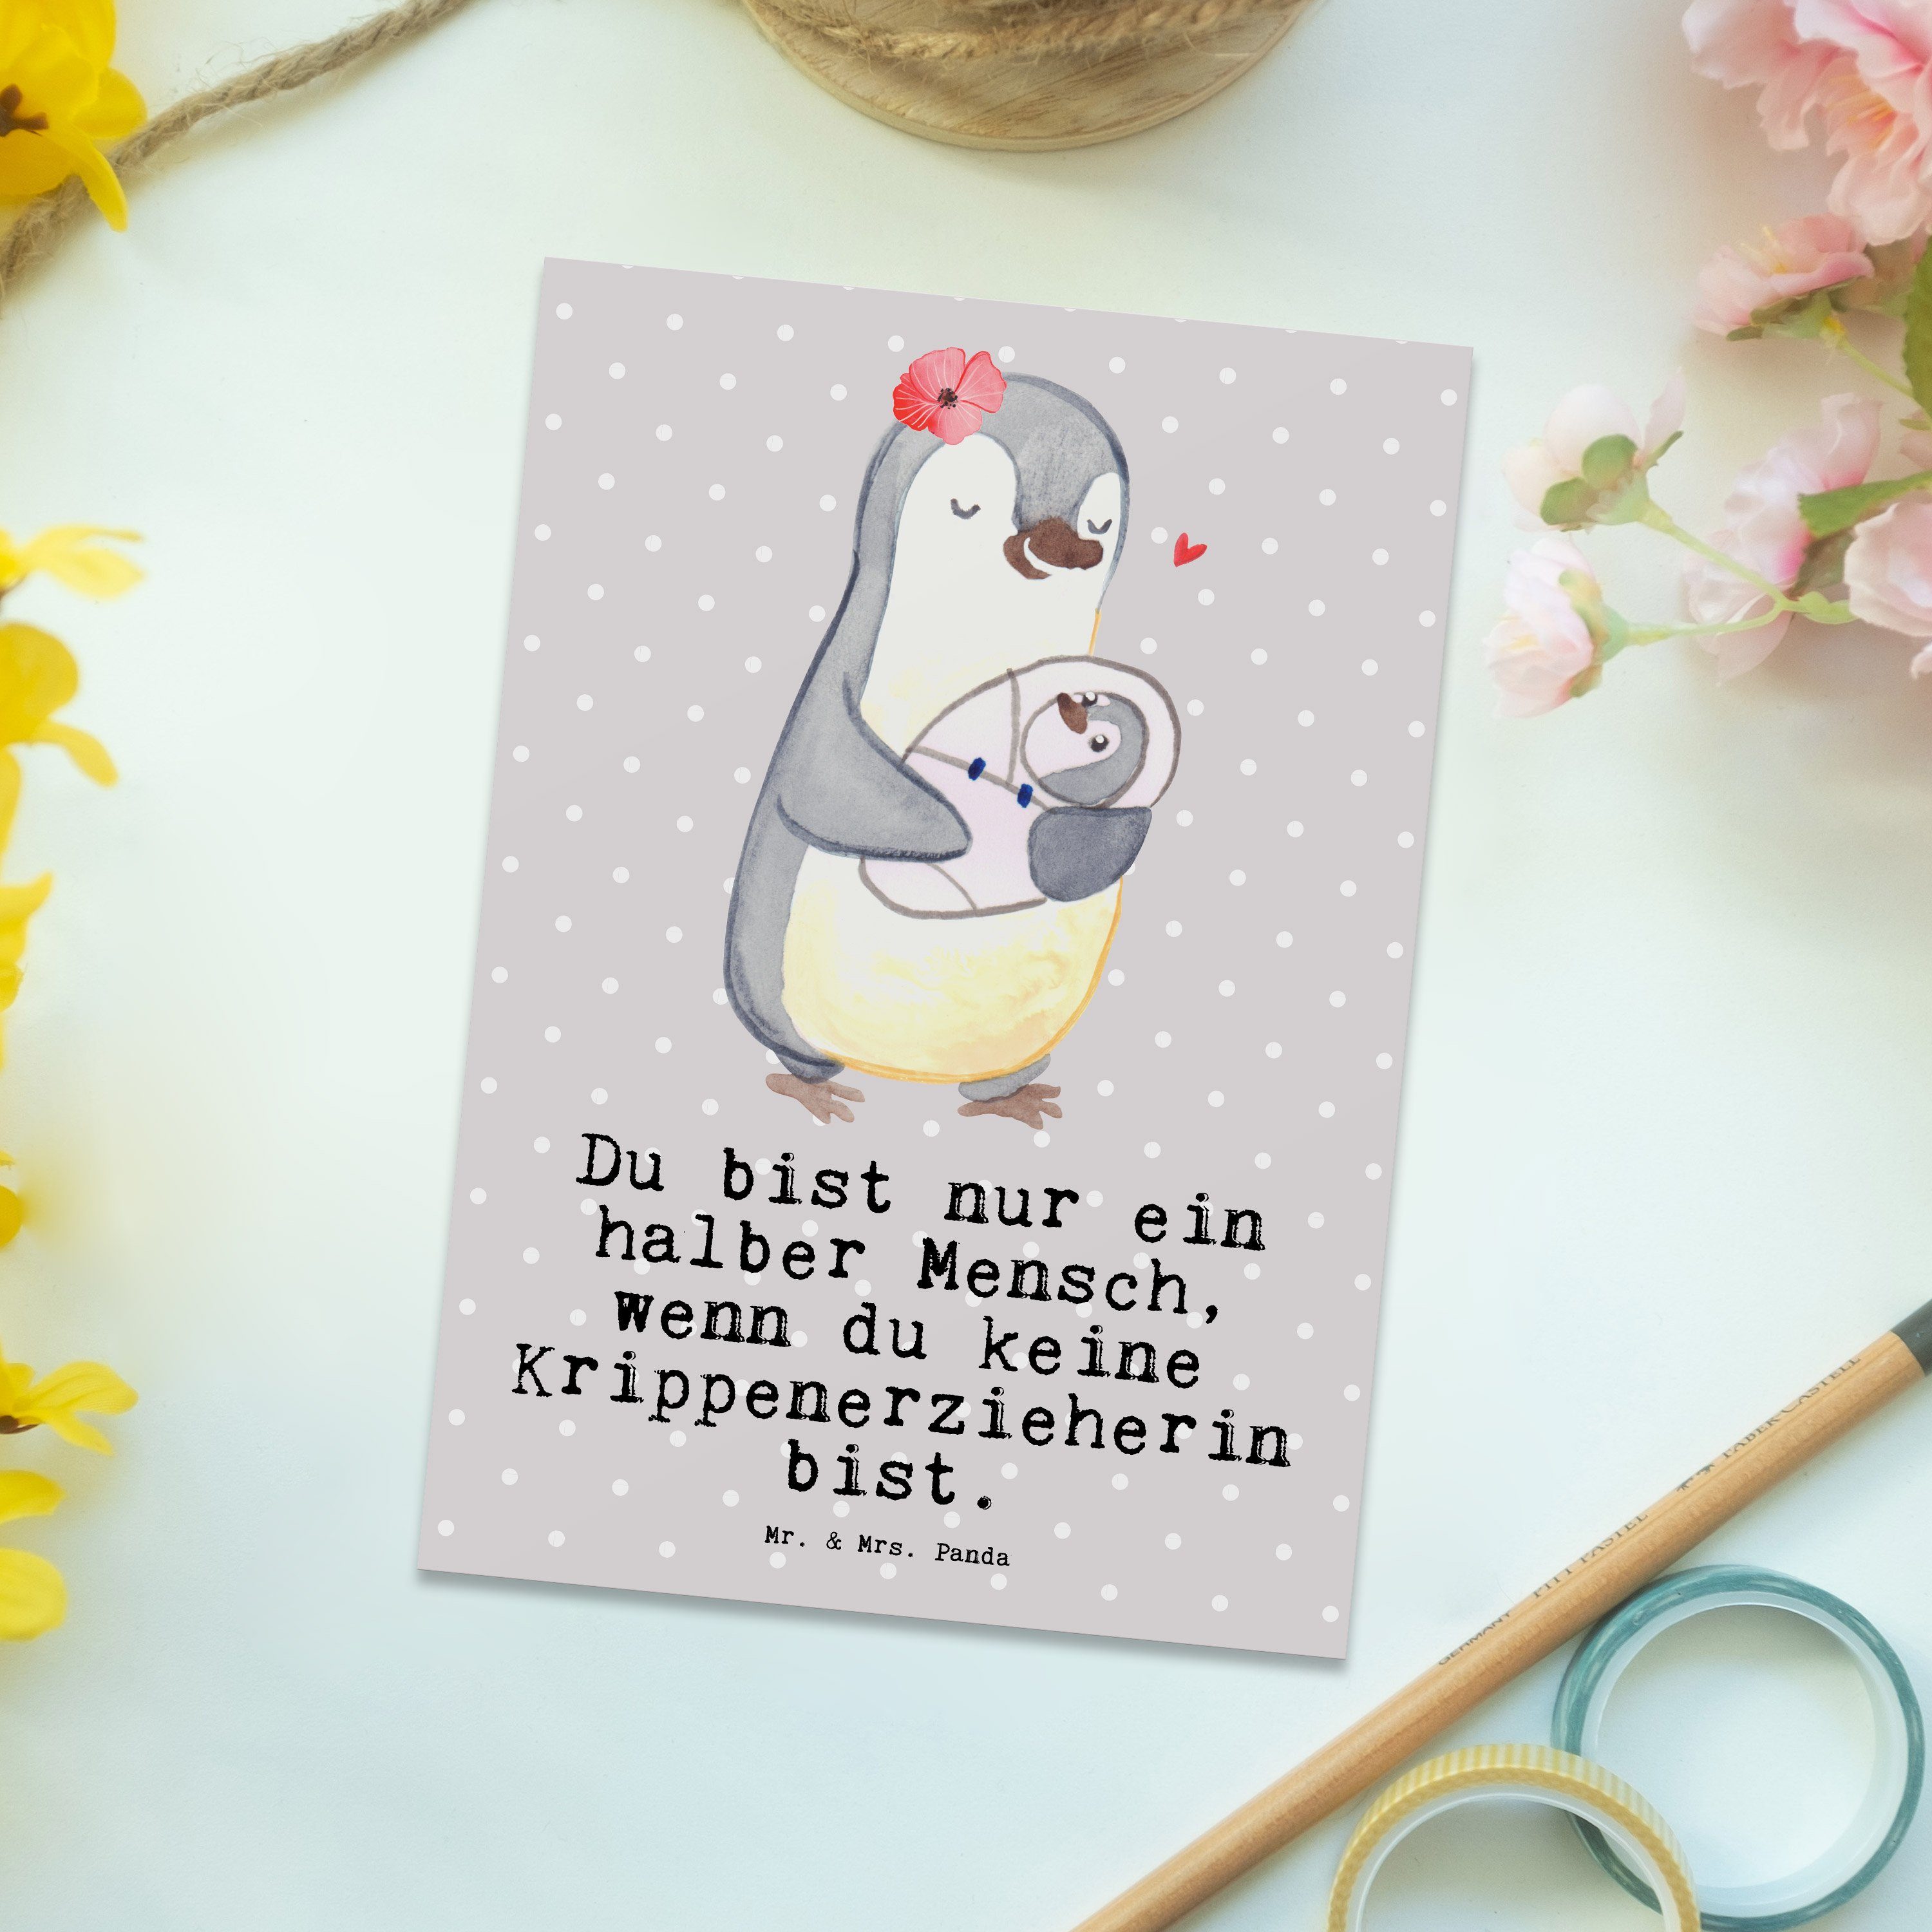 Mr. & Mrs. Panda Postkarte Krippenerzieherin mit Herz - Grau Pastell - Geschenk, Pädagogin, Einl | Grußkarten